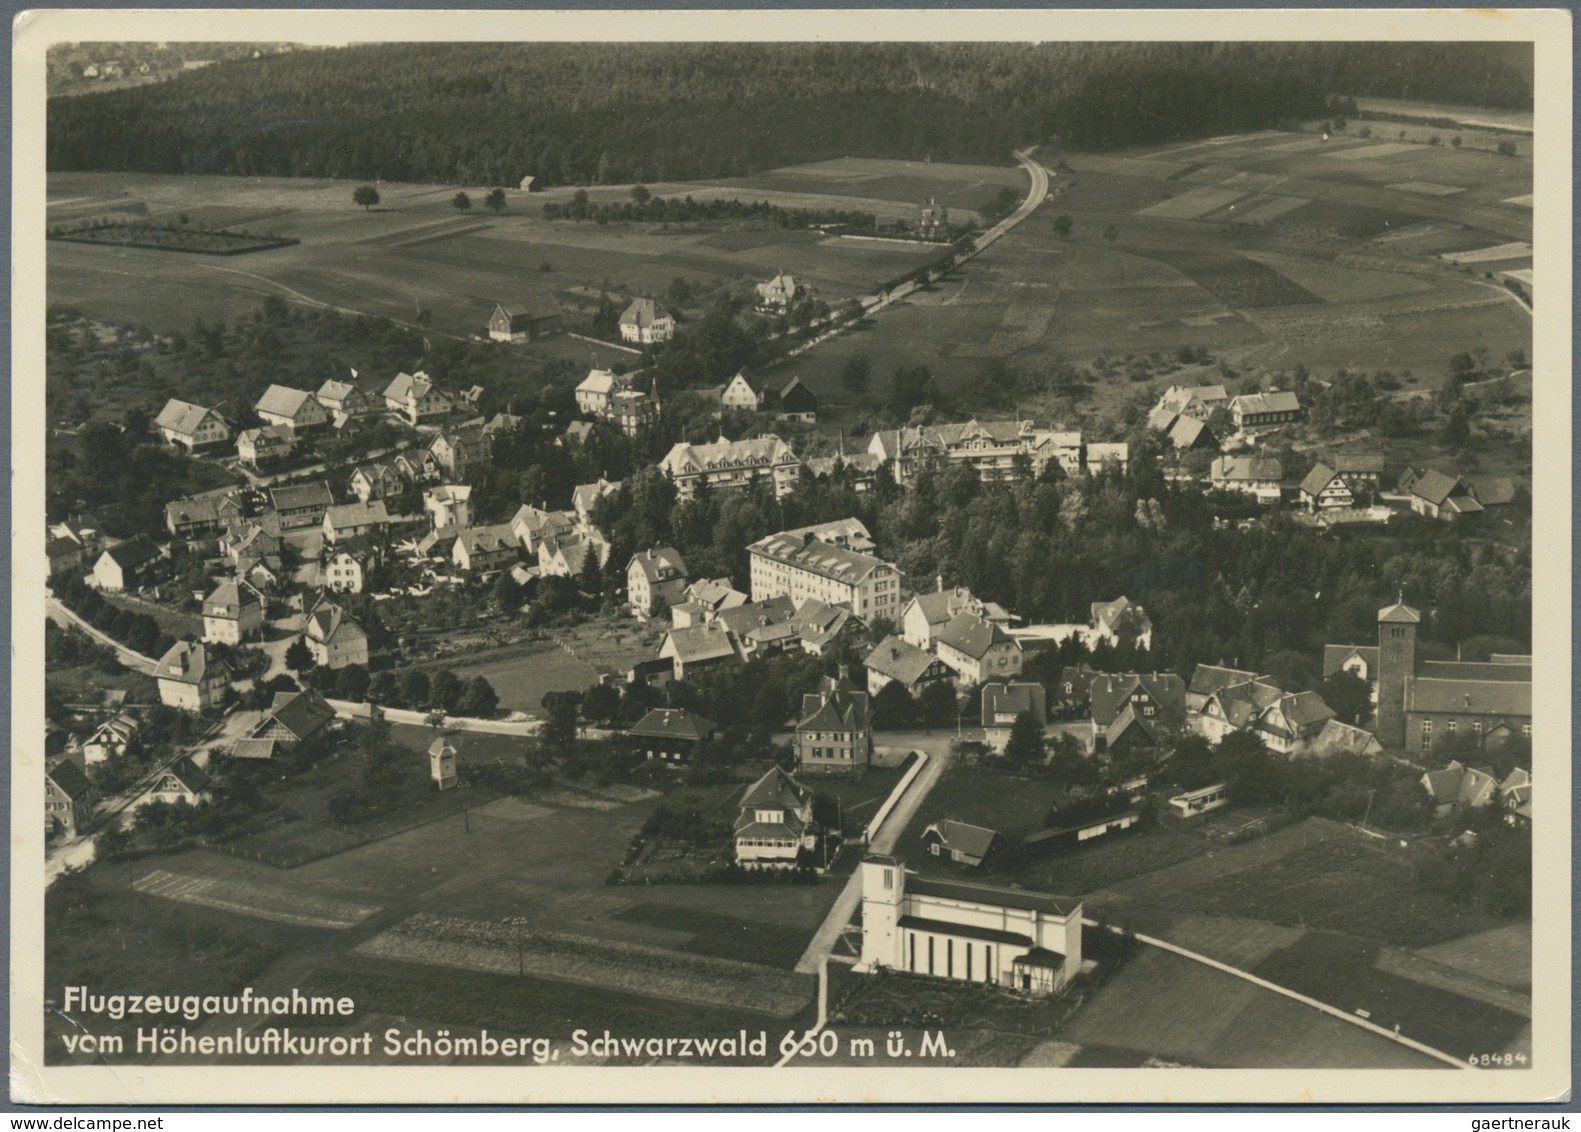 Ansichtskarten: Baden-Württemberg: NÖRDLICHER SCHWARZWALD (alte PLZ 753 - 7546), Karton mit gut 950